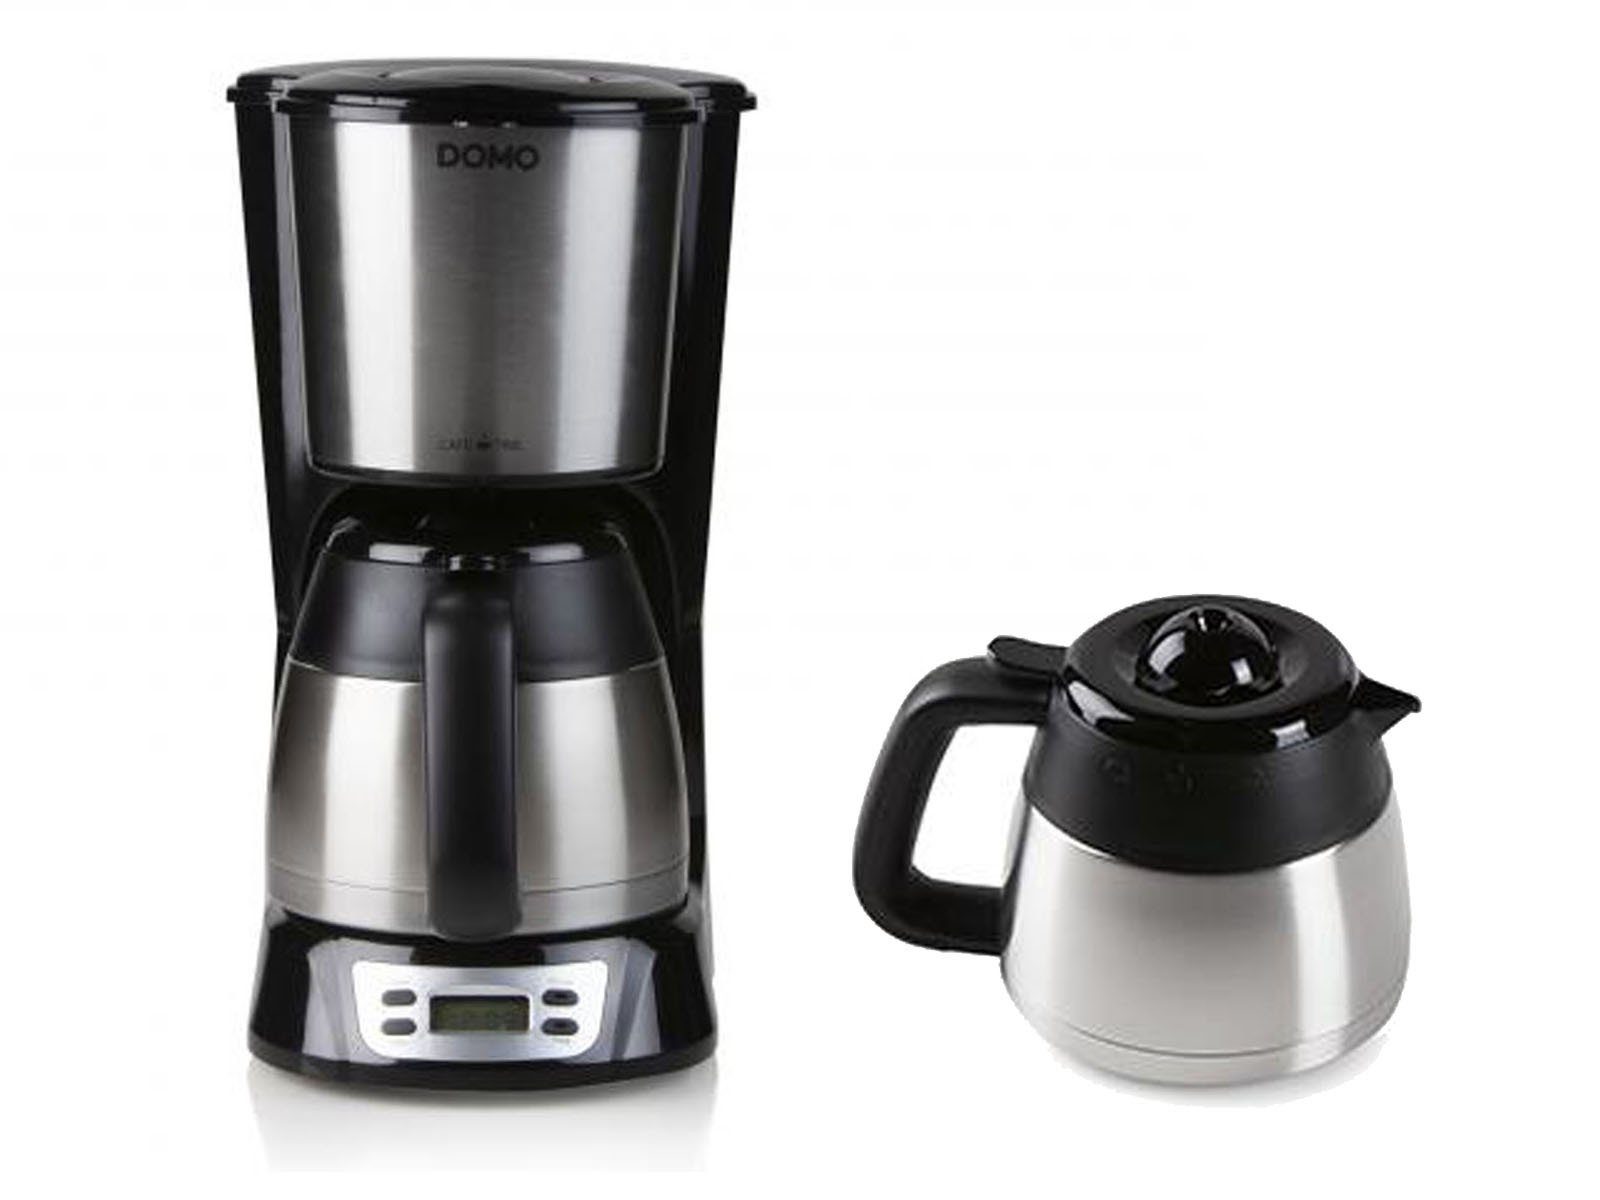 Timer, Dauerfilter für Thermoskannen Filterkaffeemaschine, Filter-Kaffee 2 Edelstahl Domo Pulver